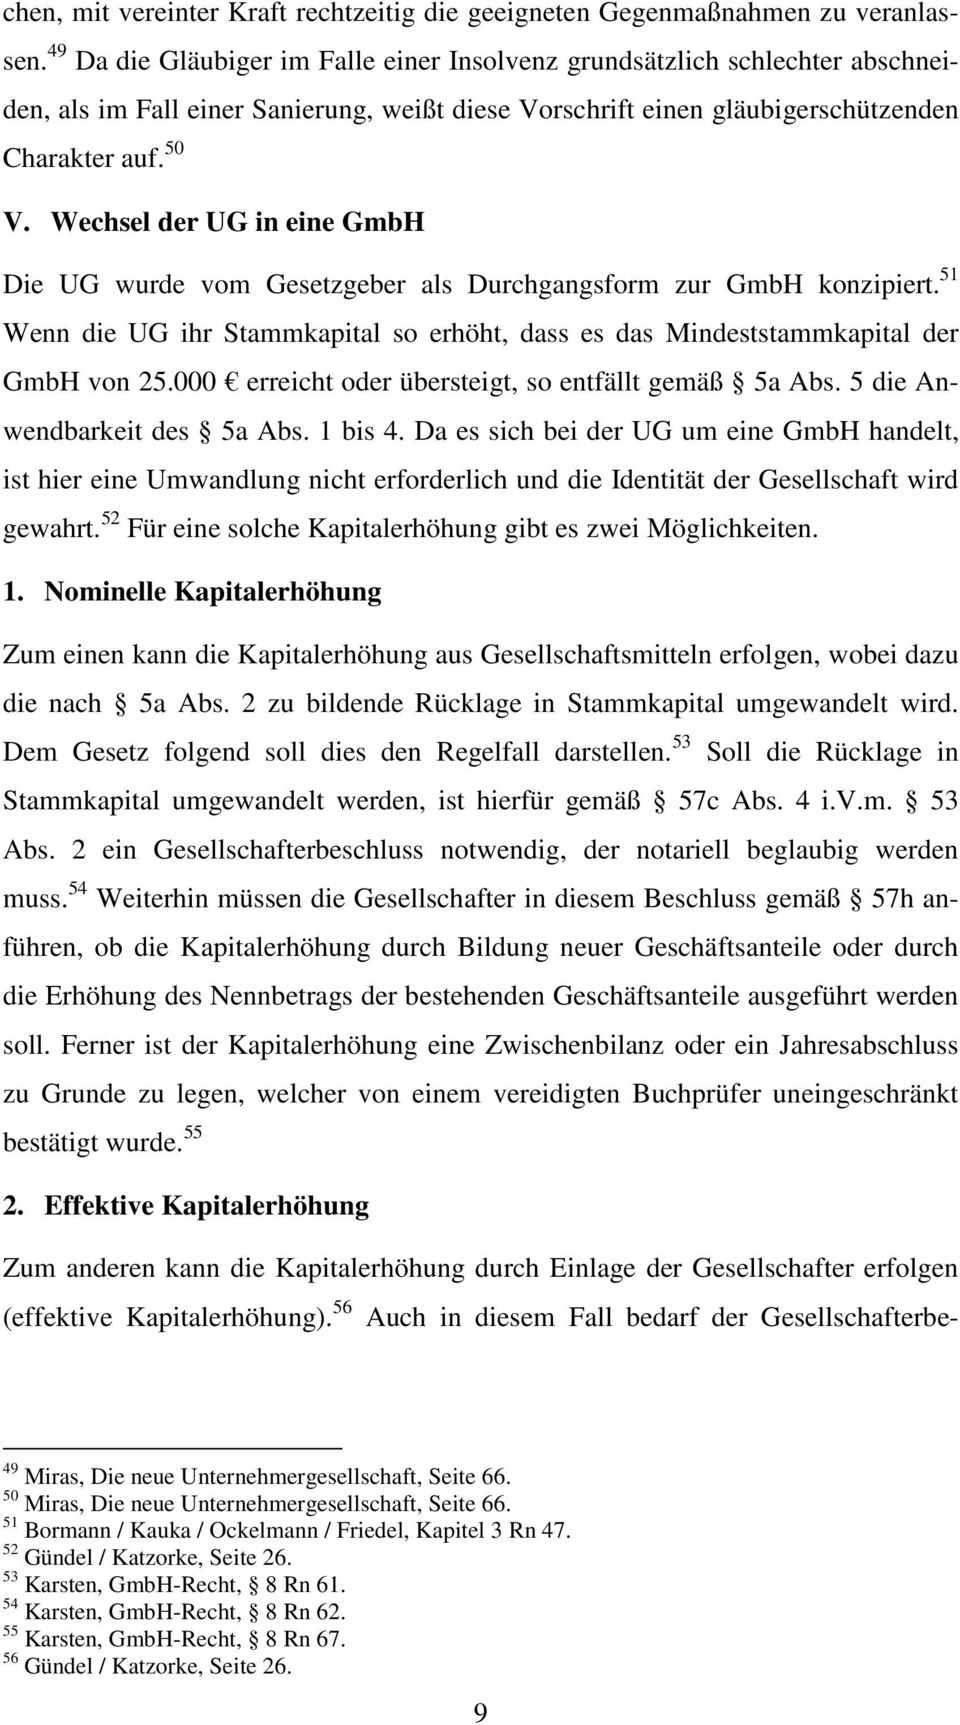 Wechsel der UG in eine GmbH Die UG wurde vom Gesetzgeber als Durchgangsform zur GmbH konzipiert. 51 Wenn die UG ihr Stammkapital so erhöht, dass es das Mindeststammkapital der GmbH von 25.